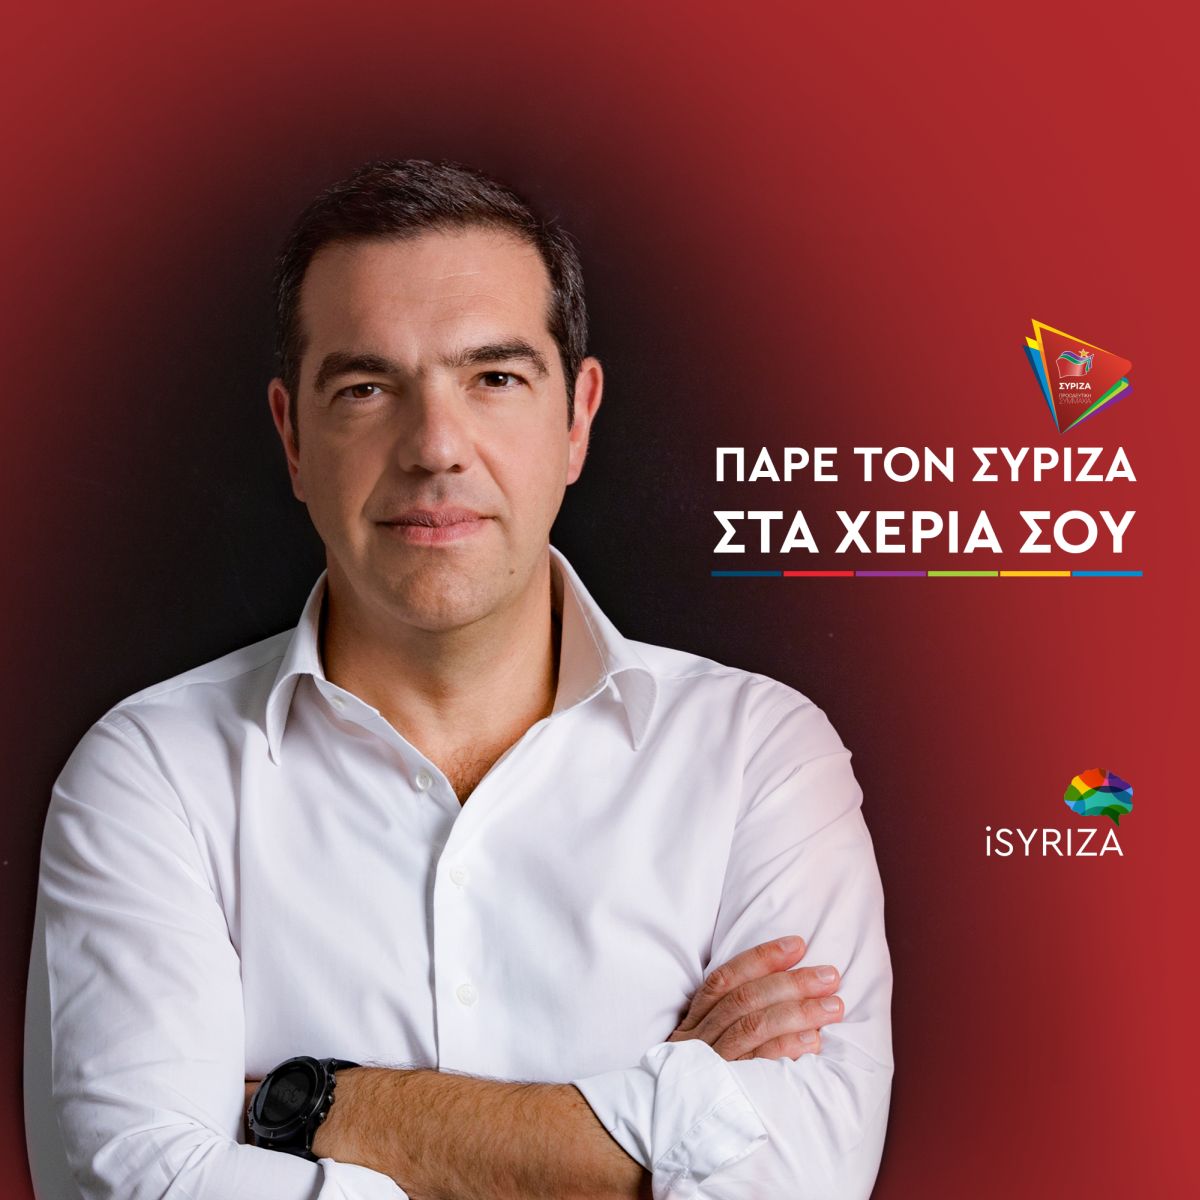 Αλ. Τσίπρας: Πάρε τον ΣΥΡΙΖΑ στα χέρια σου